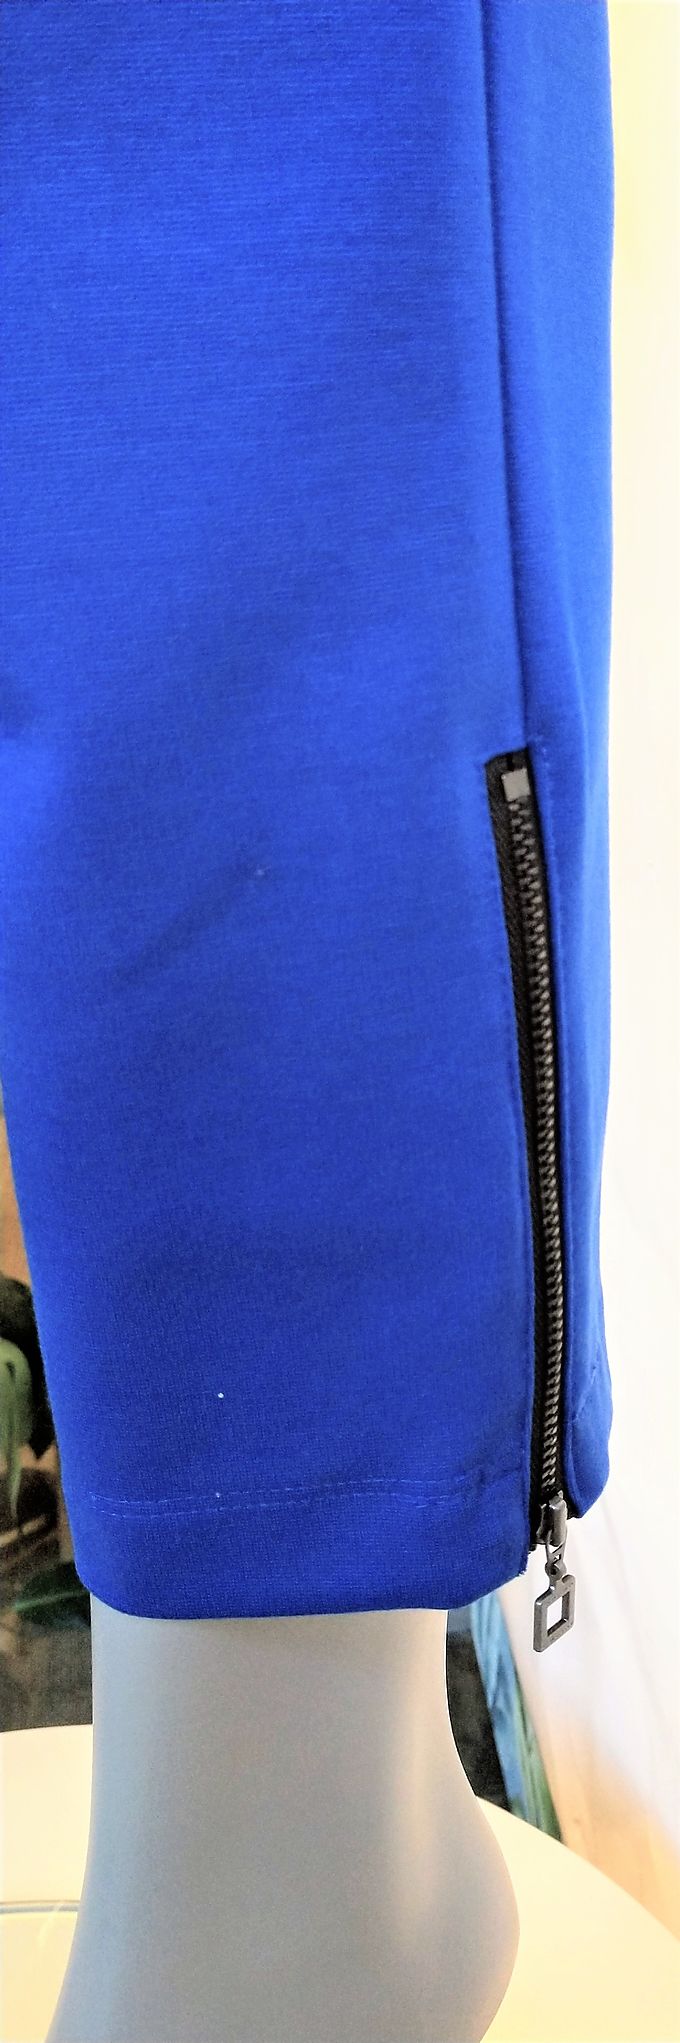 Trousers Sarah Pacini blue, zip